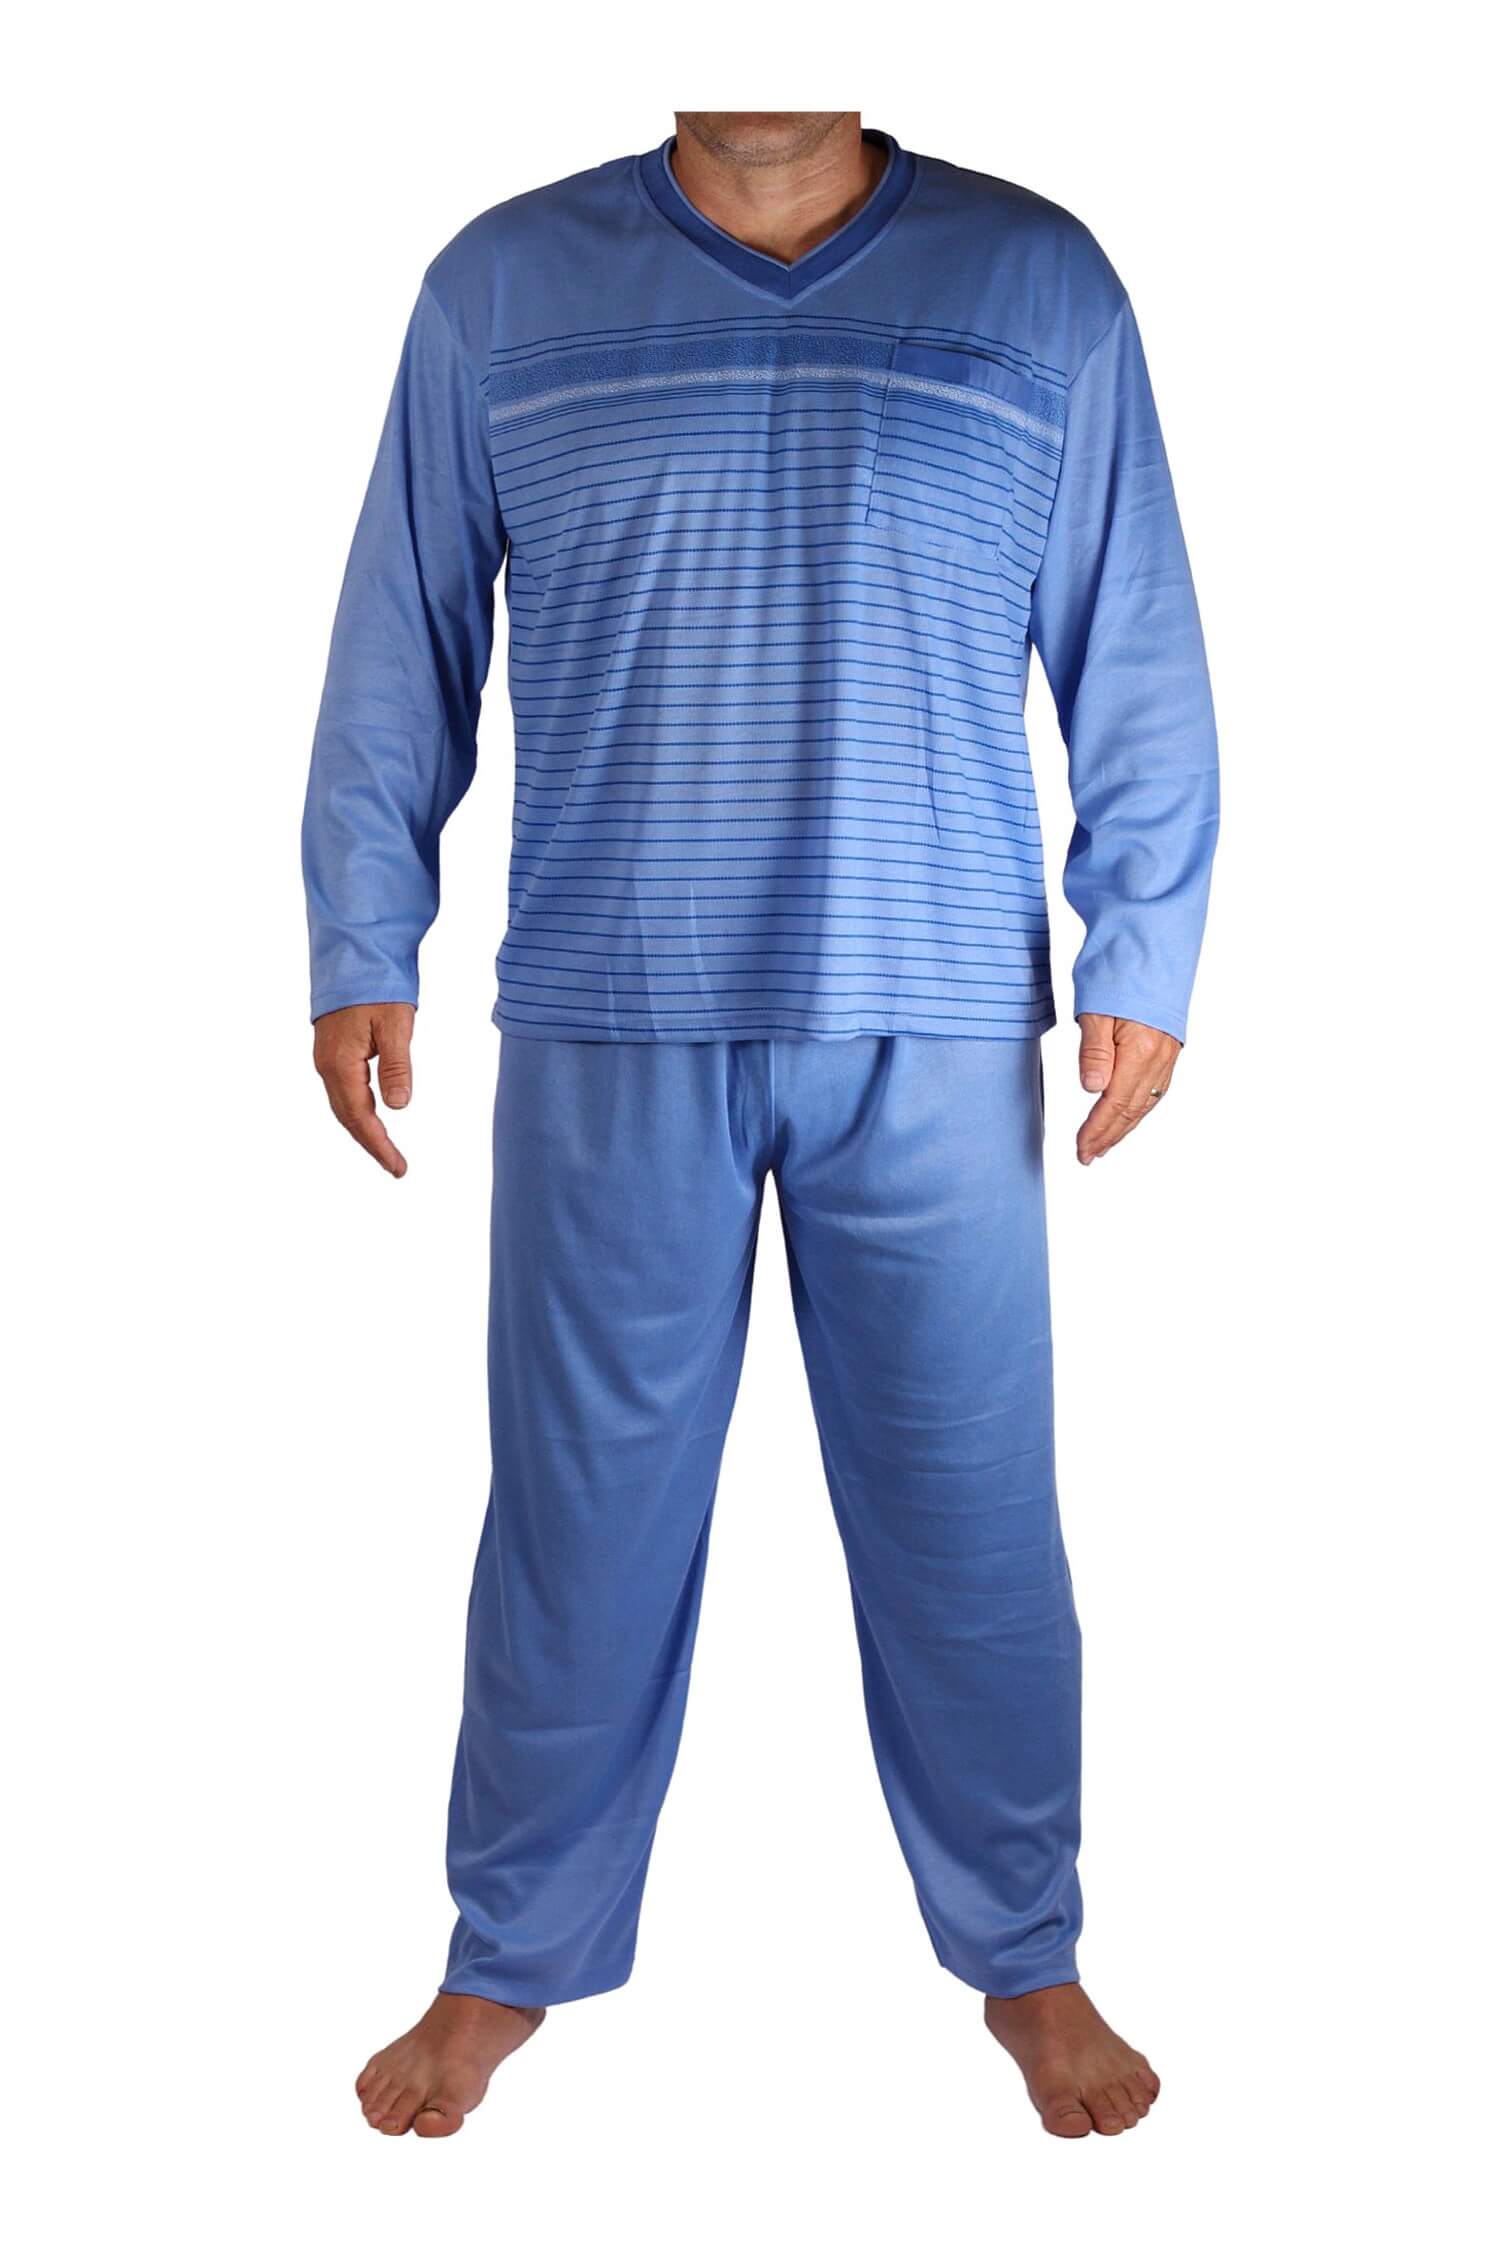 Standa pyžamo pánské dlouhé V2401 3XL světle modrá